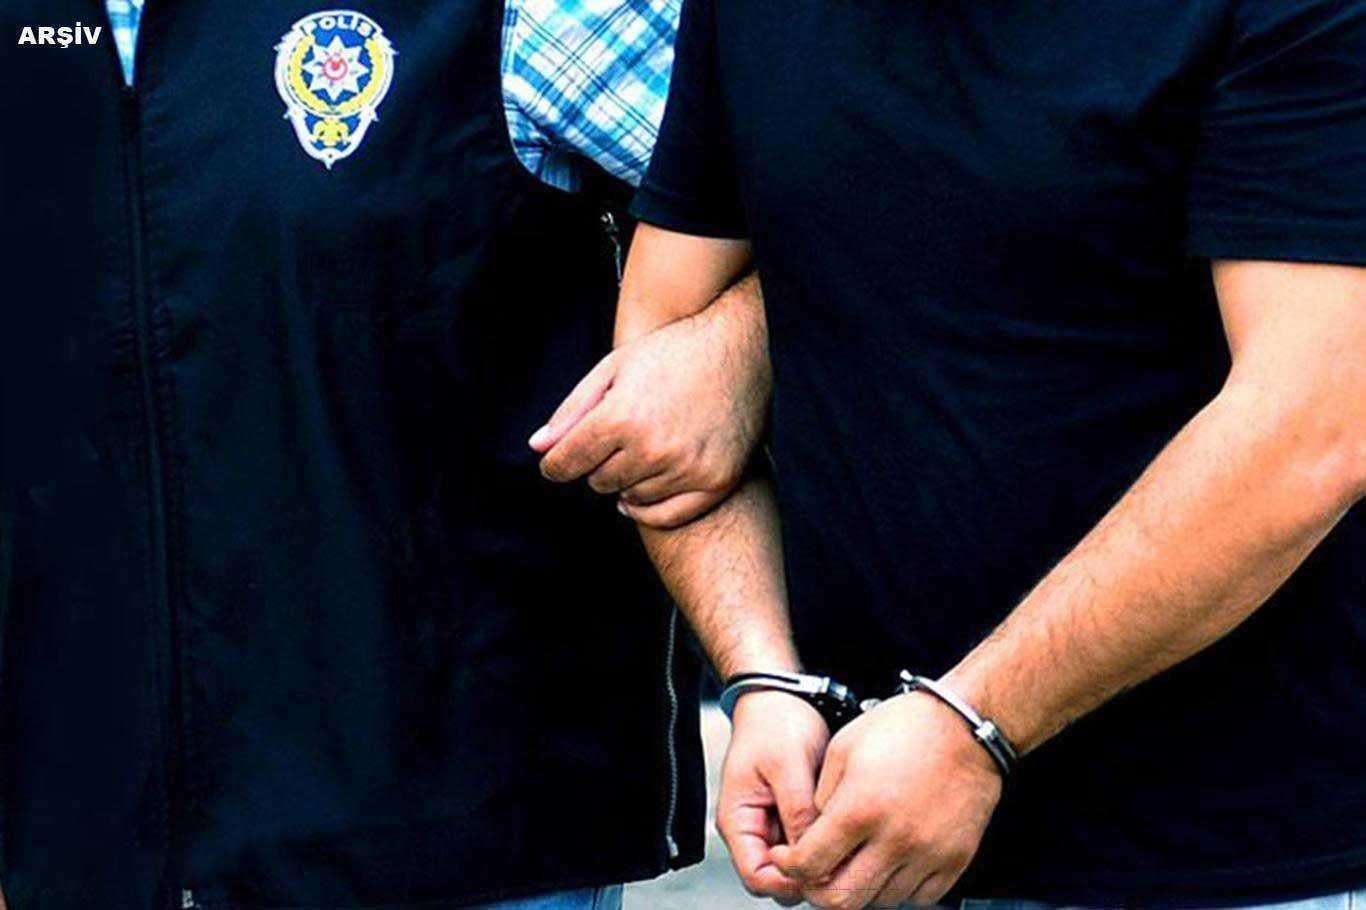 Diyarbakır Lice Halis Toprak Devlet Hastanesinde sağlık çalışanlarına saldıran şahıs tutuklandı